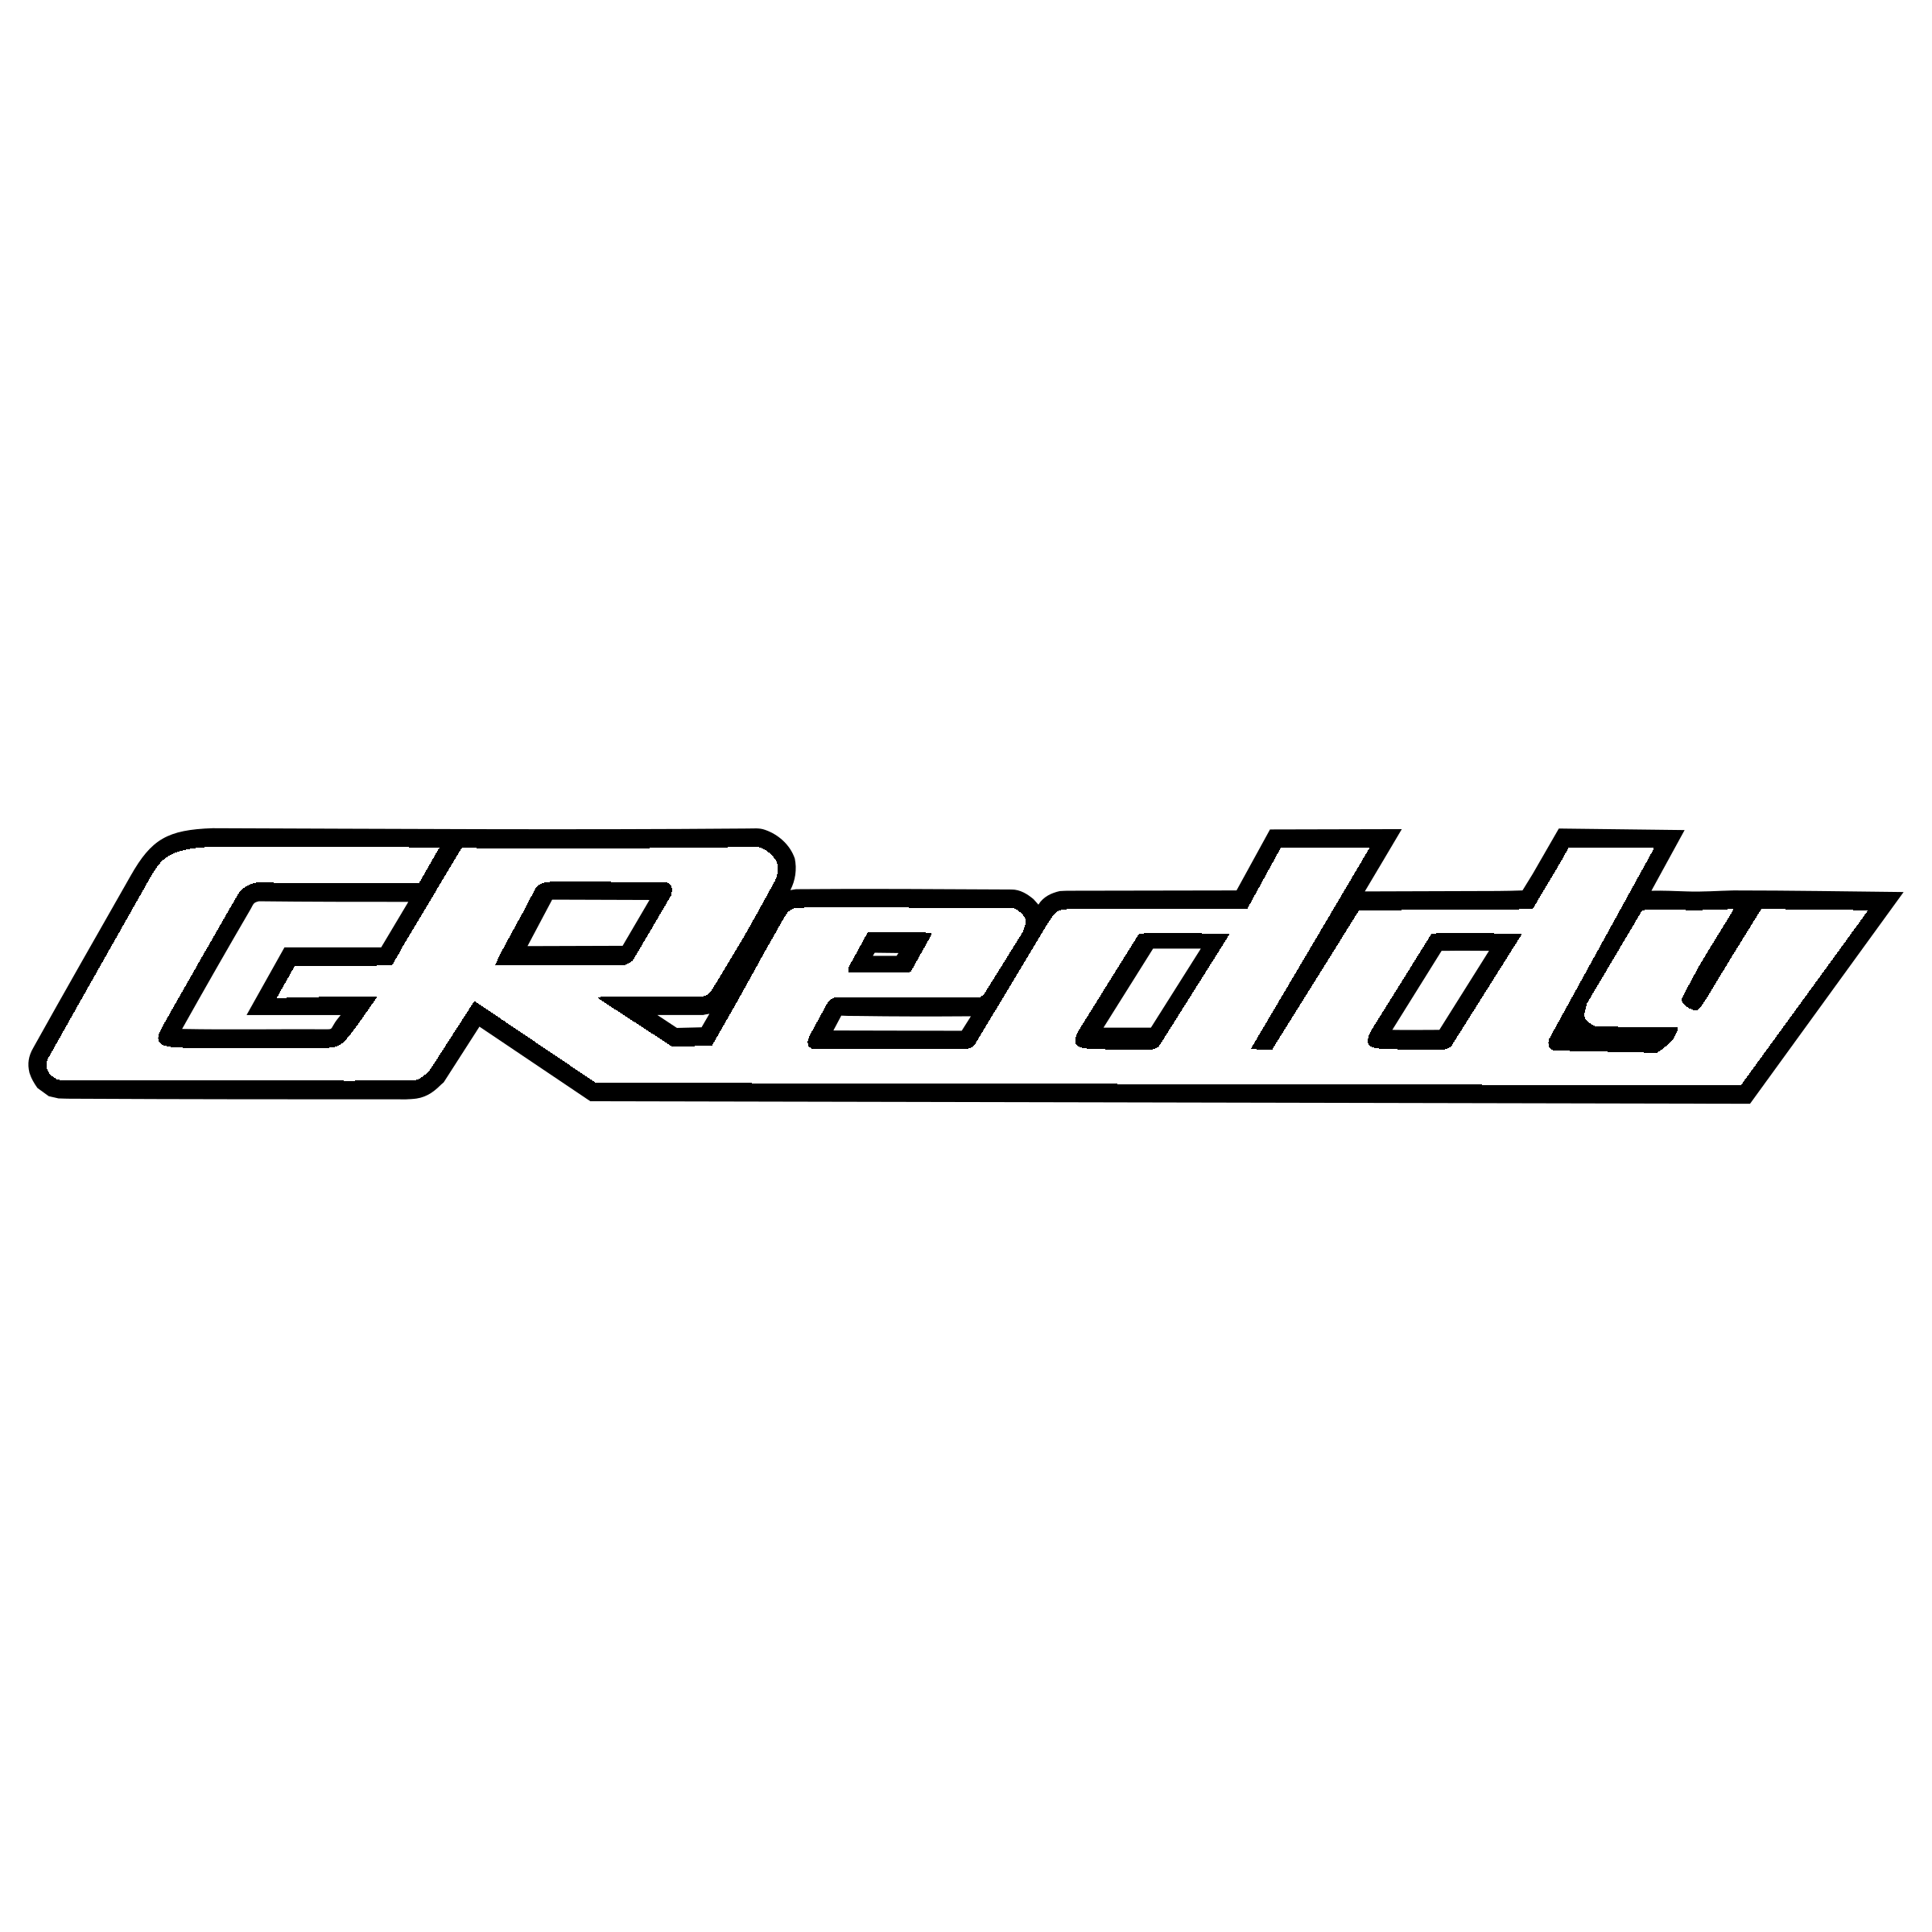 Greddy Logo.